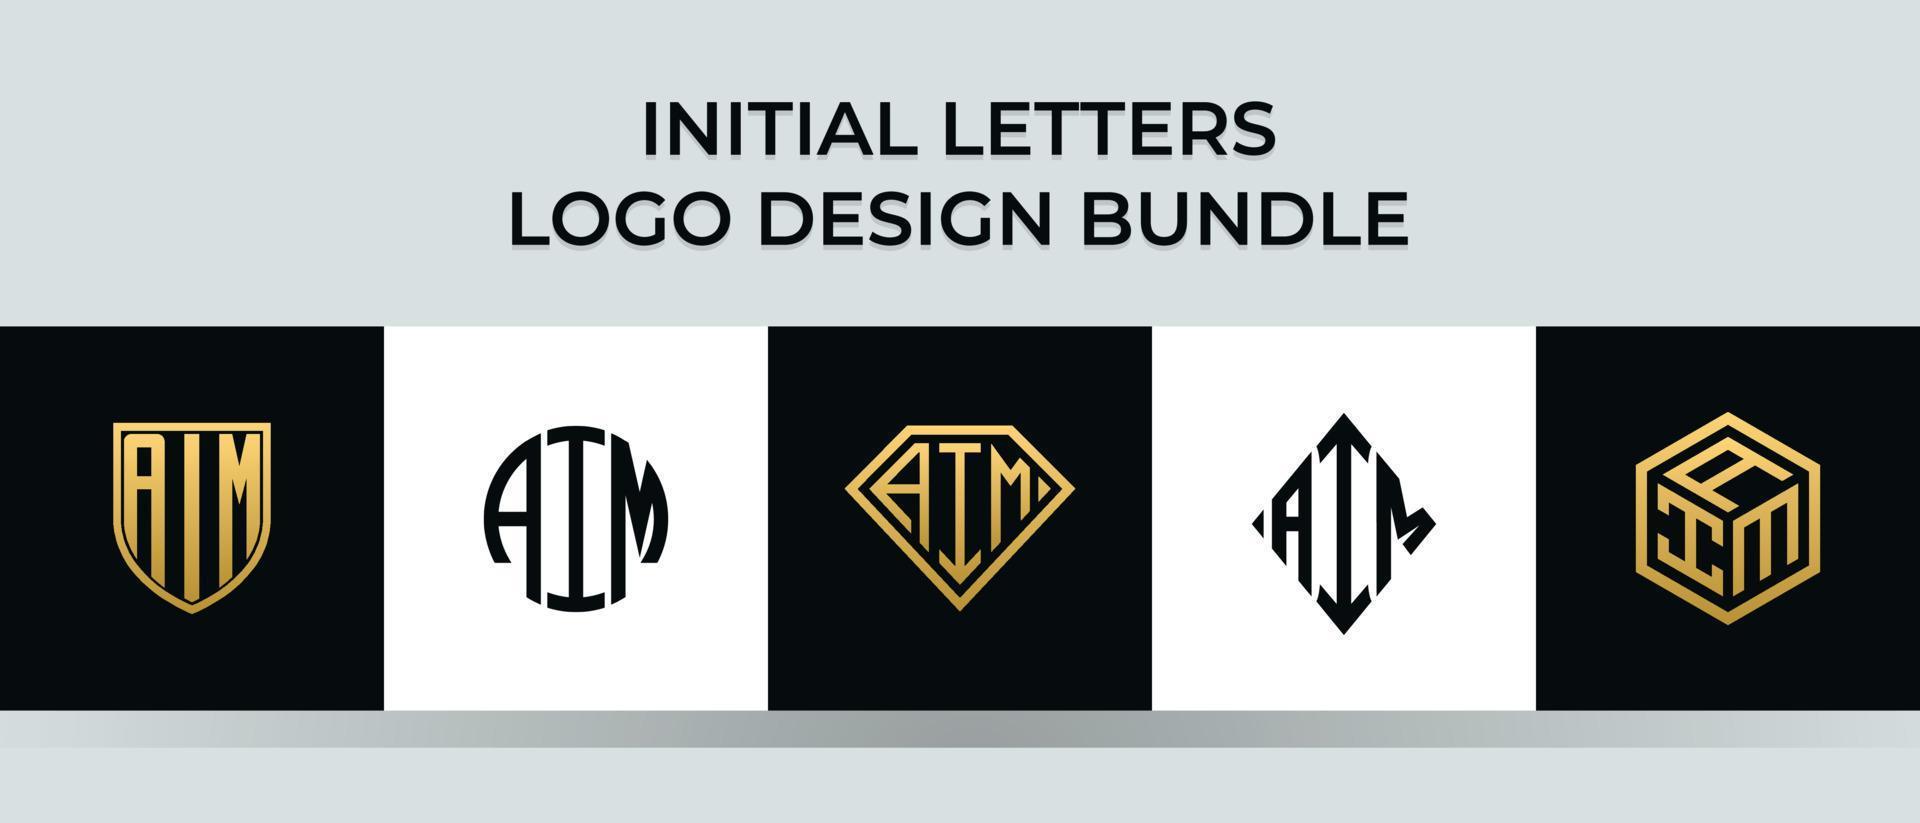 Initial letters AIM logo designs Bundle vector